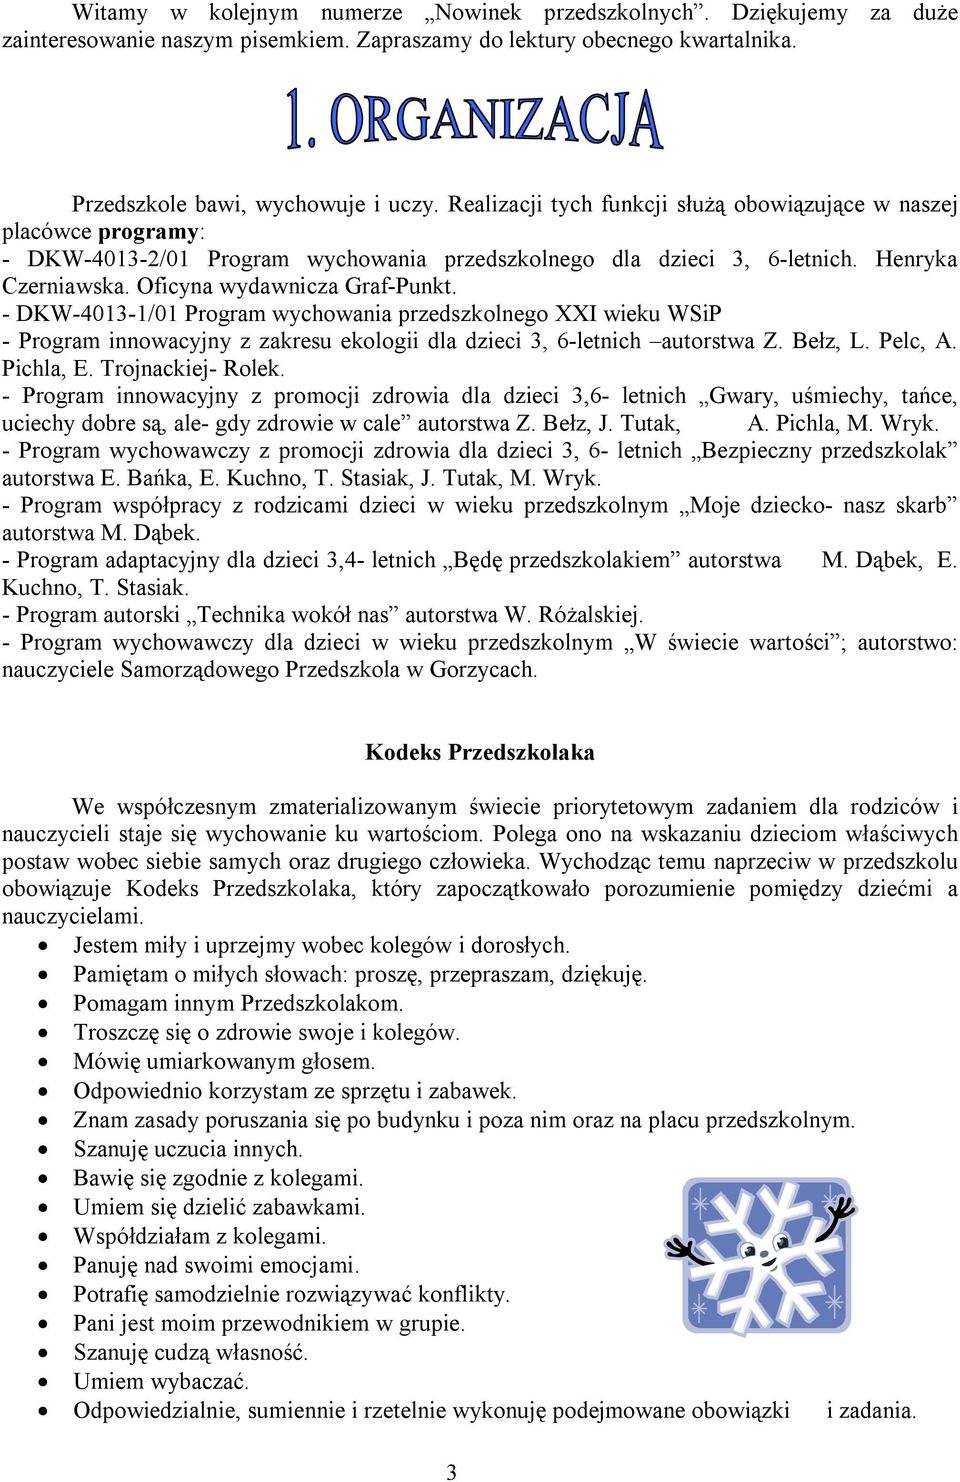 - DKW-4013-1/01 Program wychowania przedszkolnego XXI wieku WSiP - Program innowacyjny z zakresu ekologii dla dzieci 3, 6-letnich autorstwa Z. Bełz, L. Pelc, A. Pichla, E. Trojnackiej- Rolek.